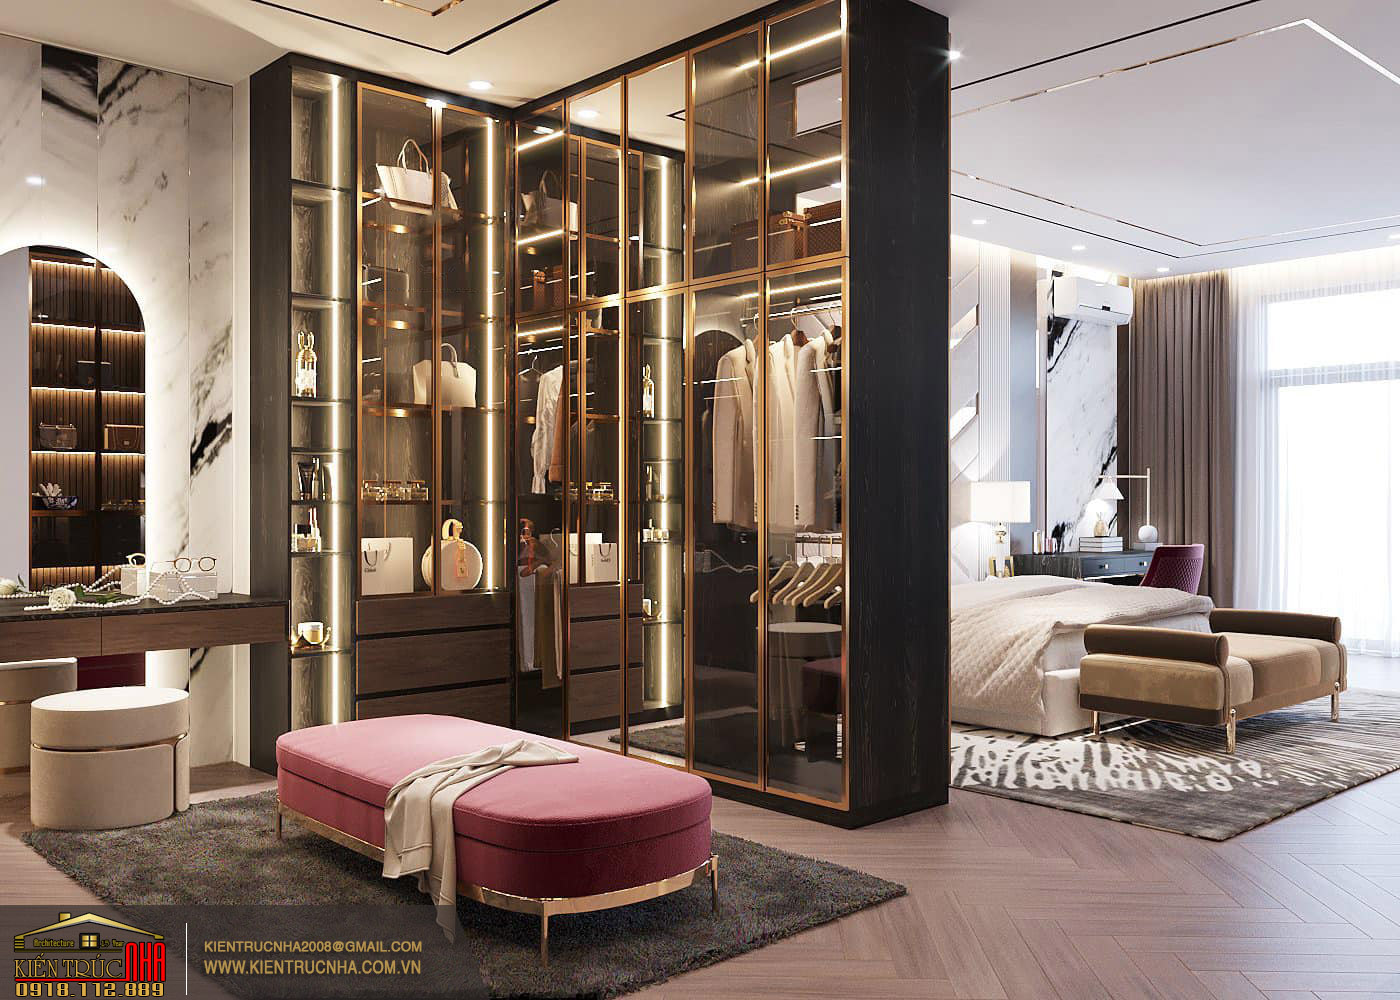 Mẫu nội thất luxury đẳng cấp như khách sạn 5 sao cđt: anh Vinh Bình Định